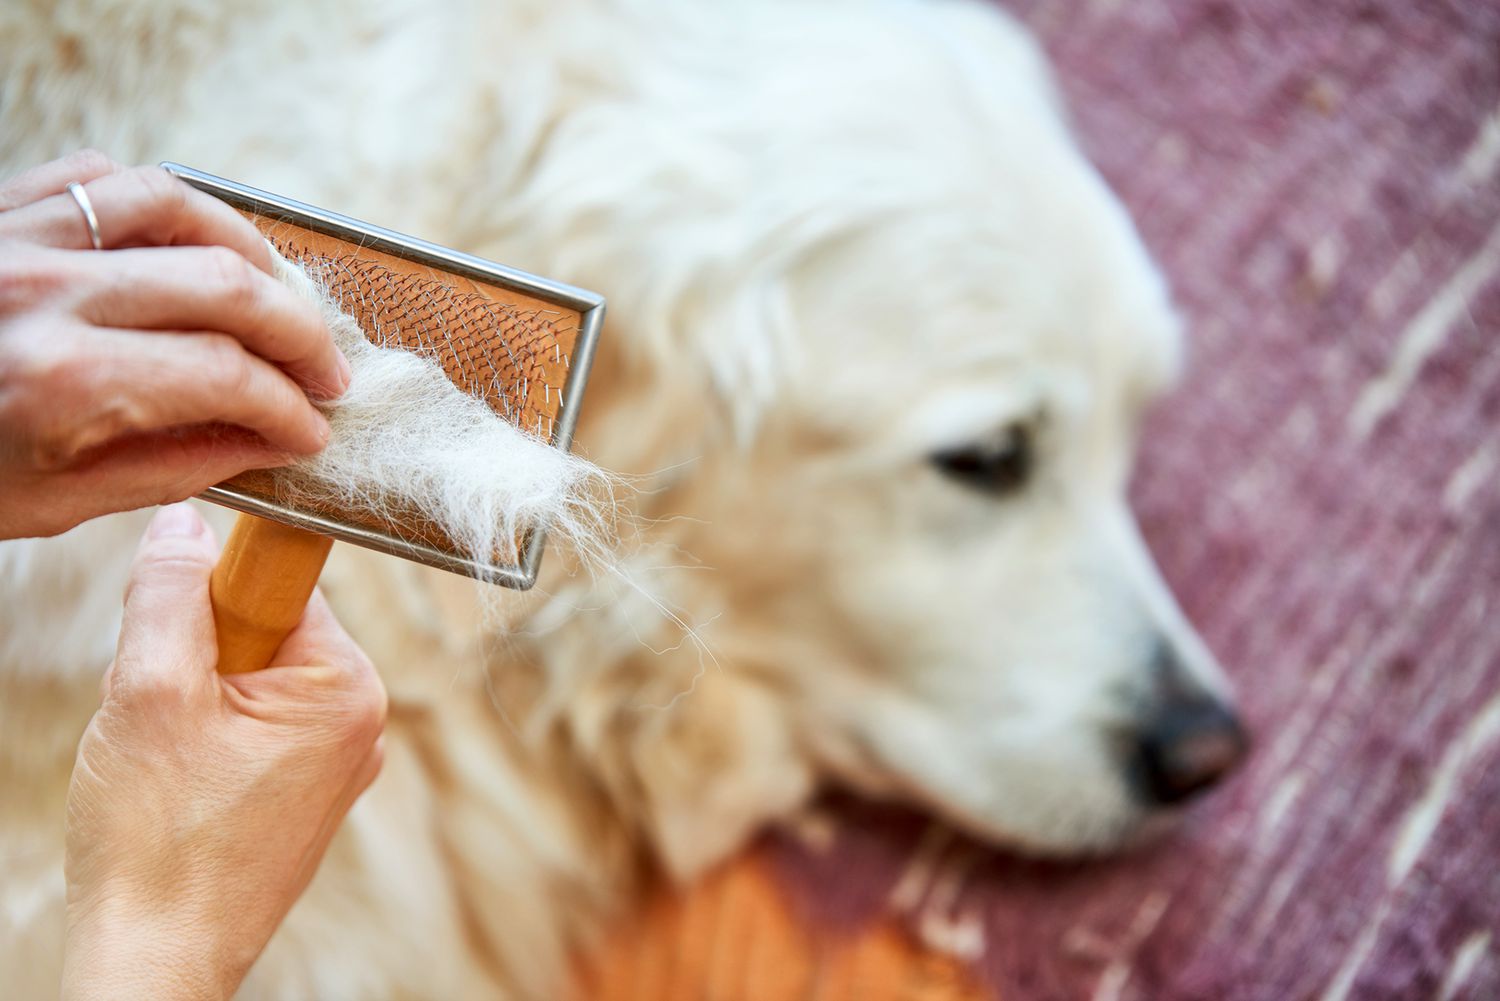 Tìm hiểu sức khỏe thông qua bộ lông của chó 